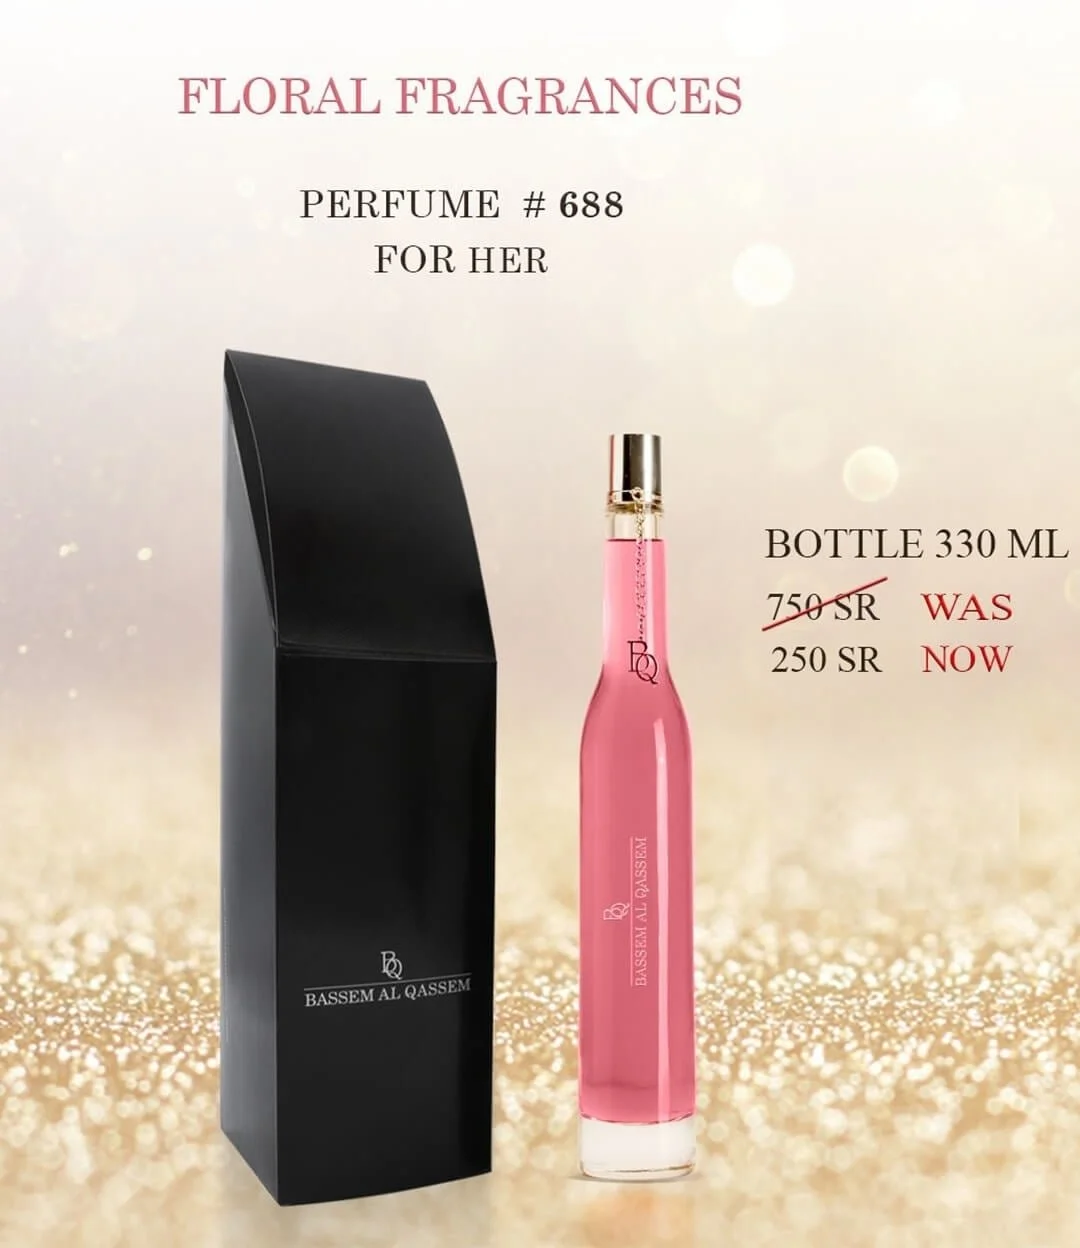 Perfume #688 Floral Fragrance for Her by Bassem Al Qassem 